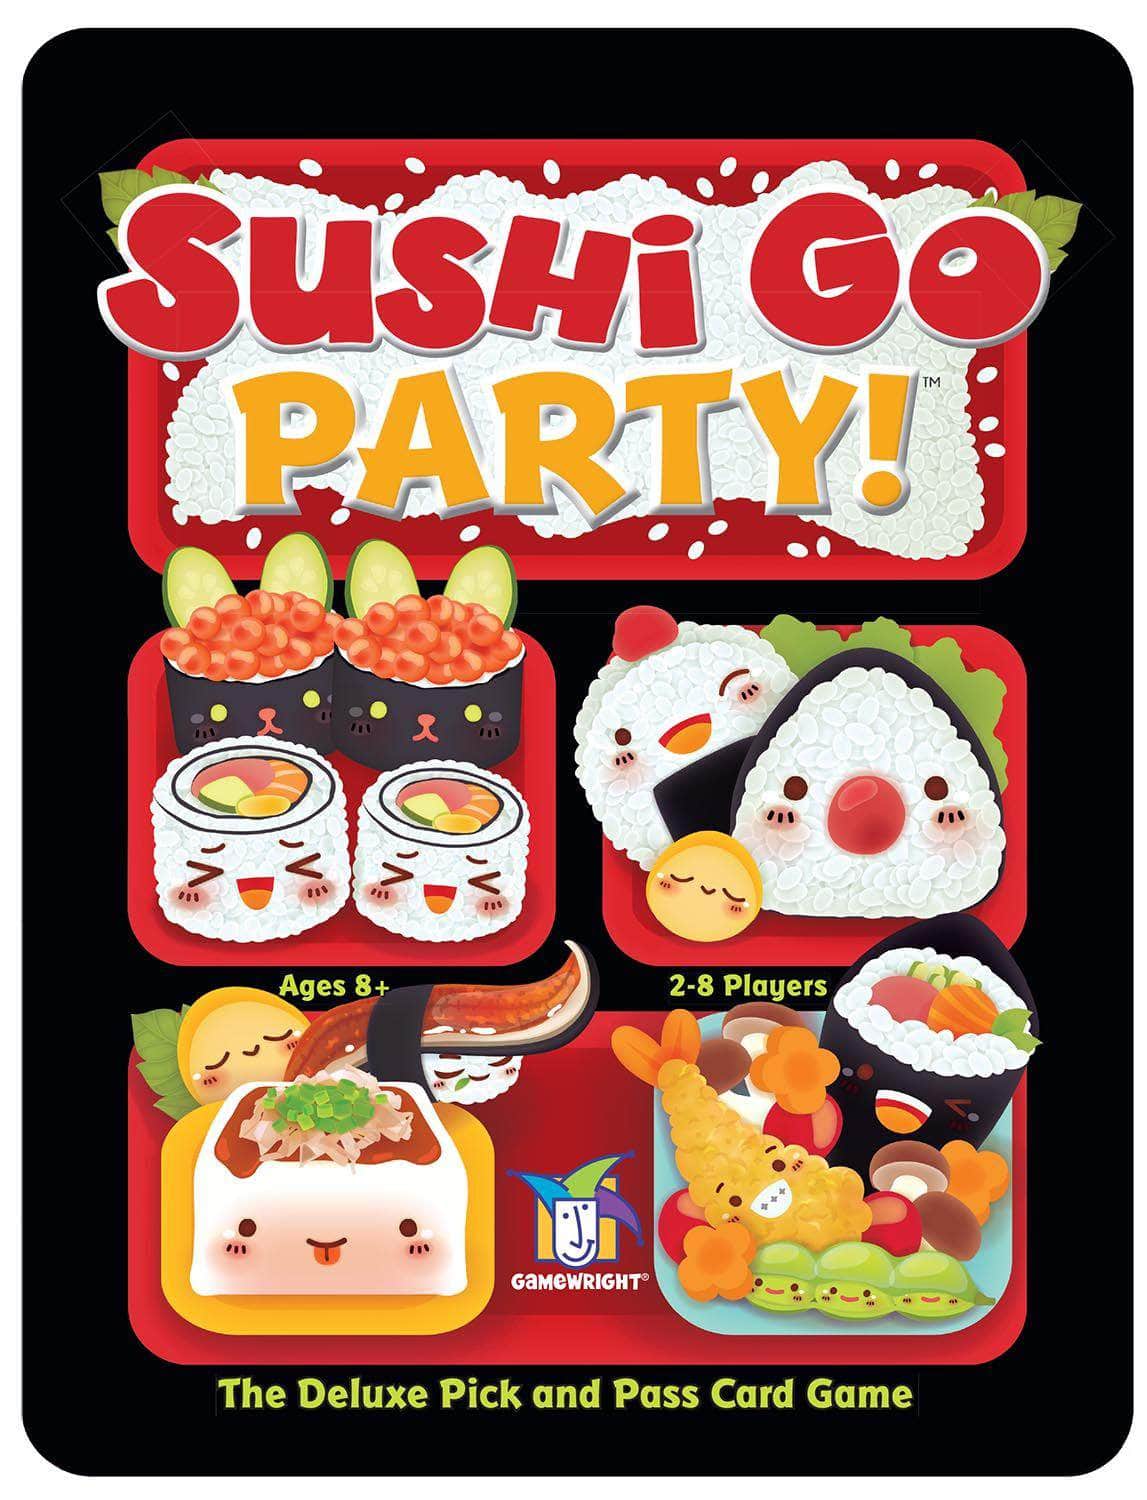 Sushi Go Party! Detaljhandelsspel Gamewright, Devir, Rebell, uplay.it edizioni, vita goblin -spel, Zoch Verlag KS800484A